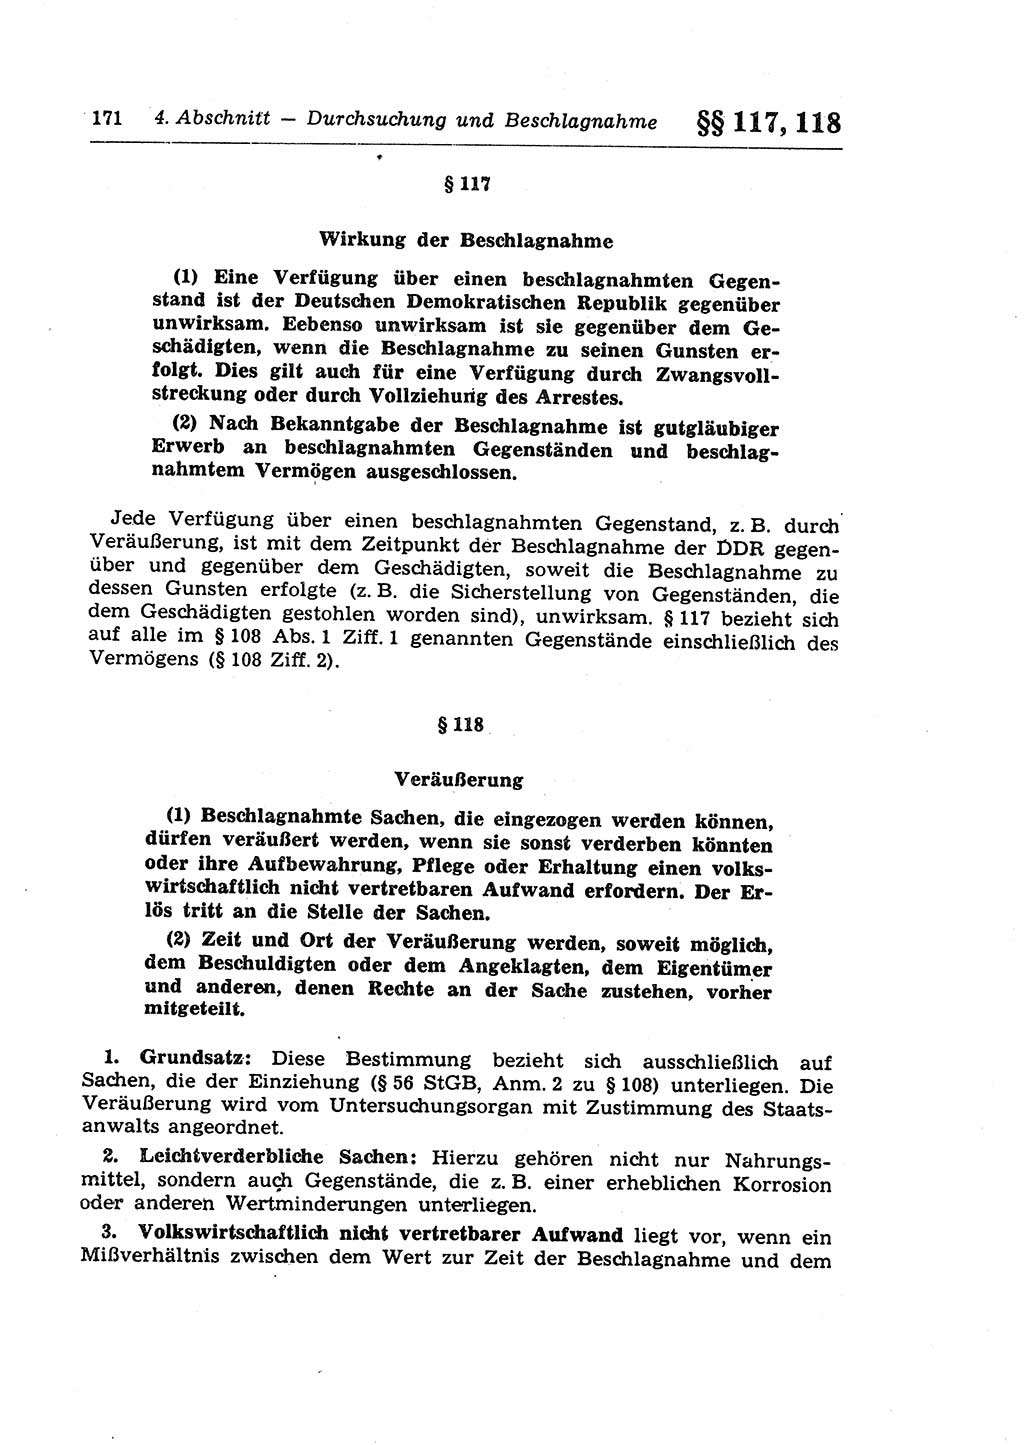 StrafprozeÃŸrecht der DDR (Deutsche Demokratische Republik), Lehrkommentar zur StrafprozeÃŸordnung (StPO) 1968, Seite 171 (StrafprozeÃŸr. DDR Lehrkomm. StPO 19688, S. 171)